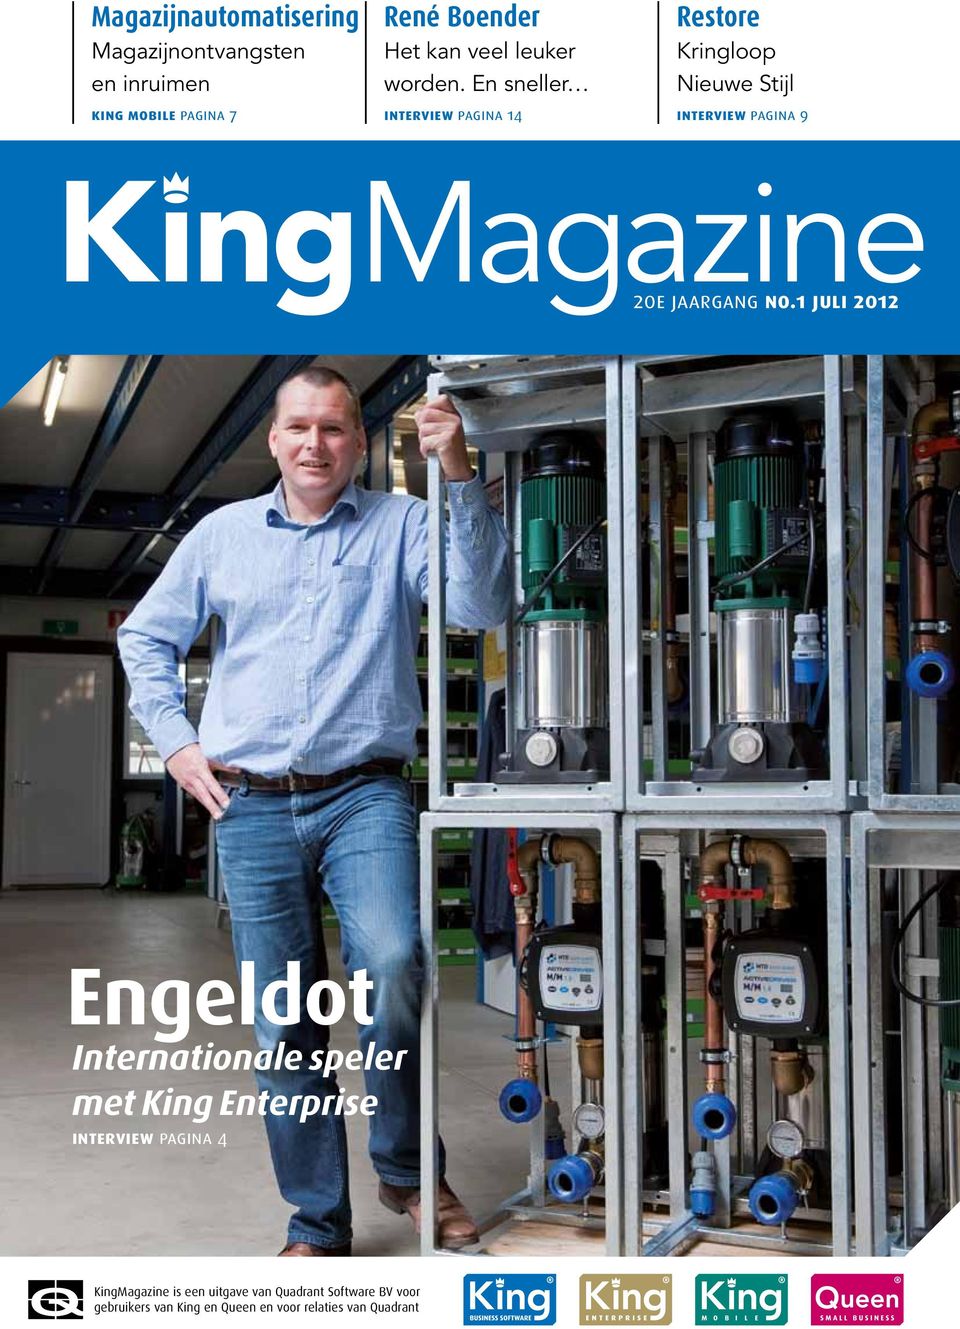 En sneller interview pagina 14 Restore Kringloop Nieuwe Stijl interview pagina 9 KingMagazine 20e jaargang